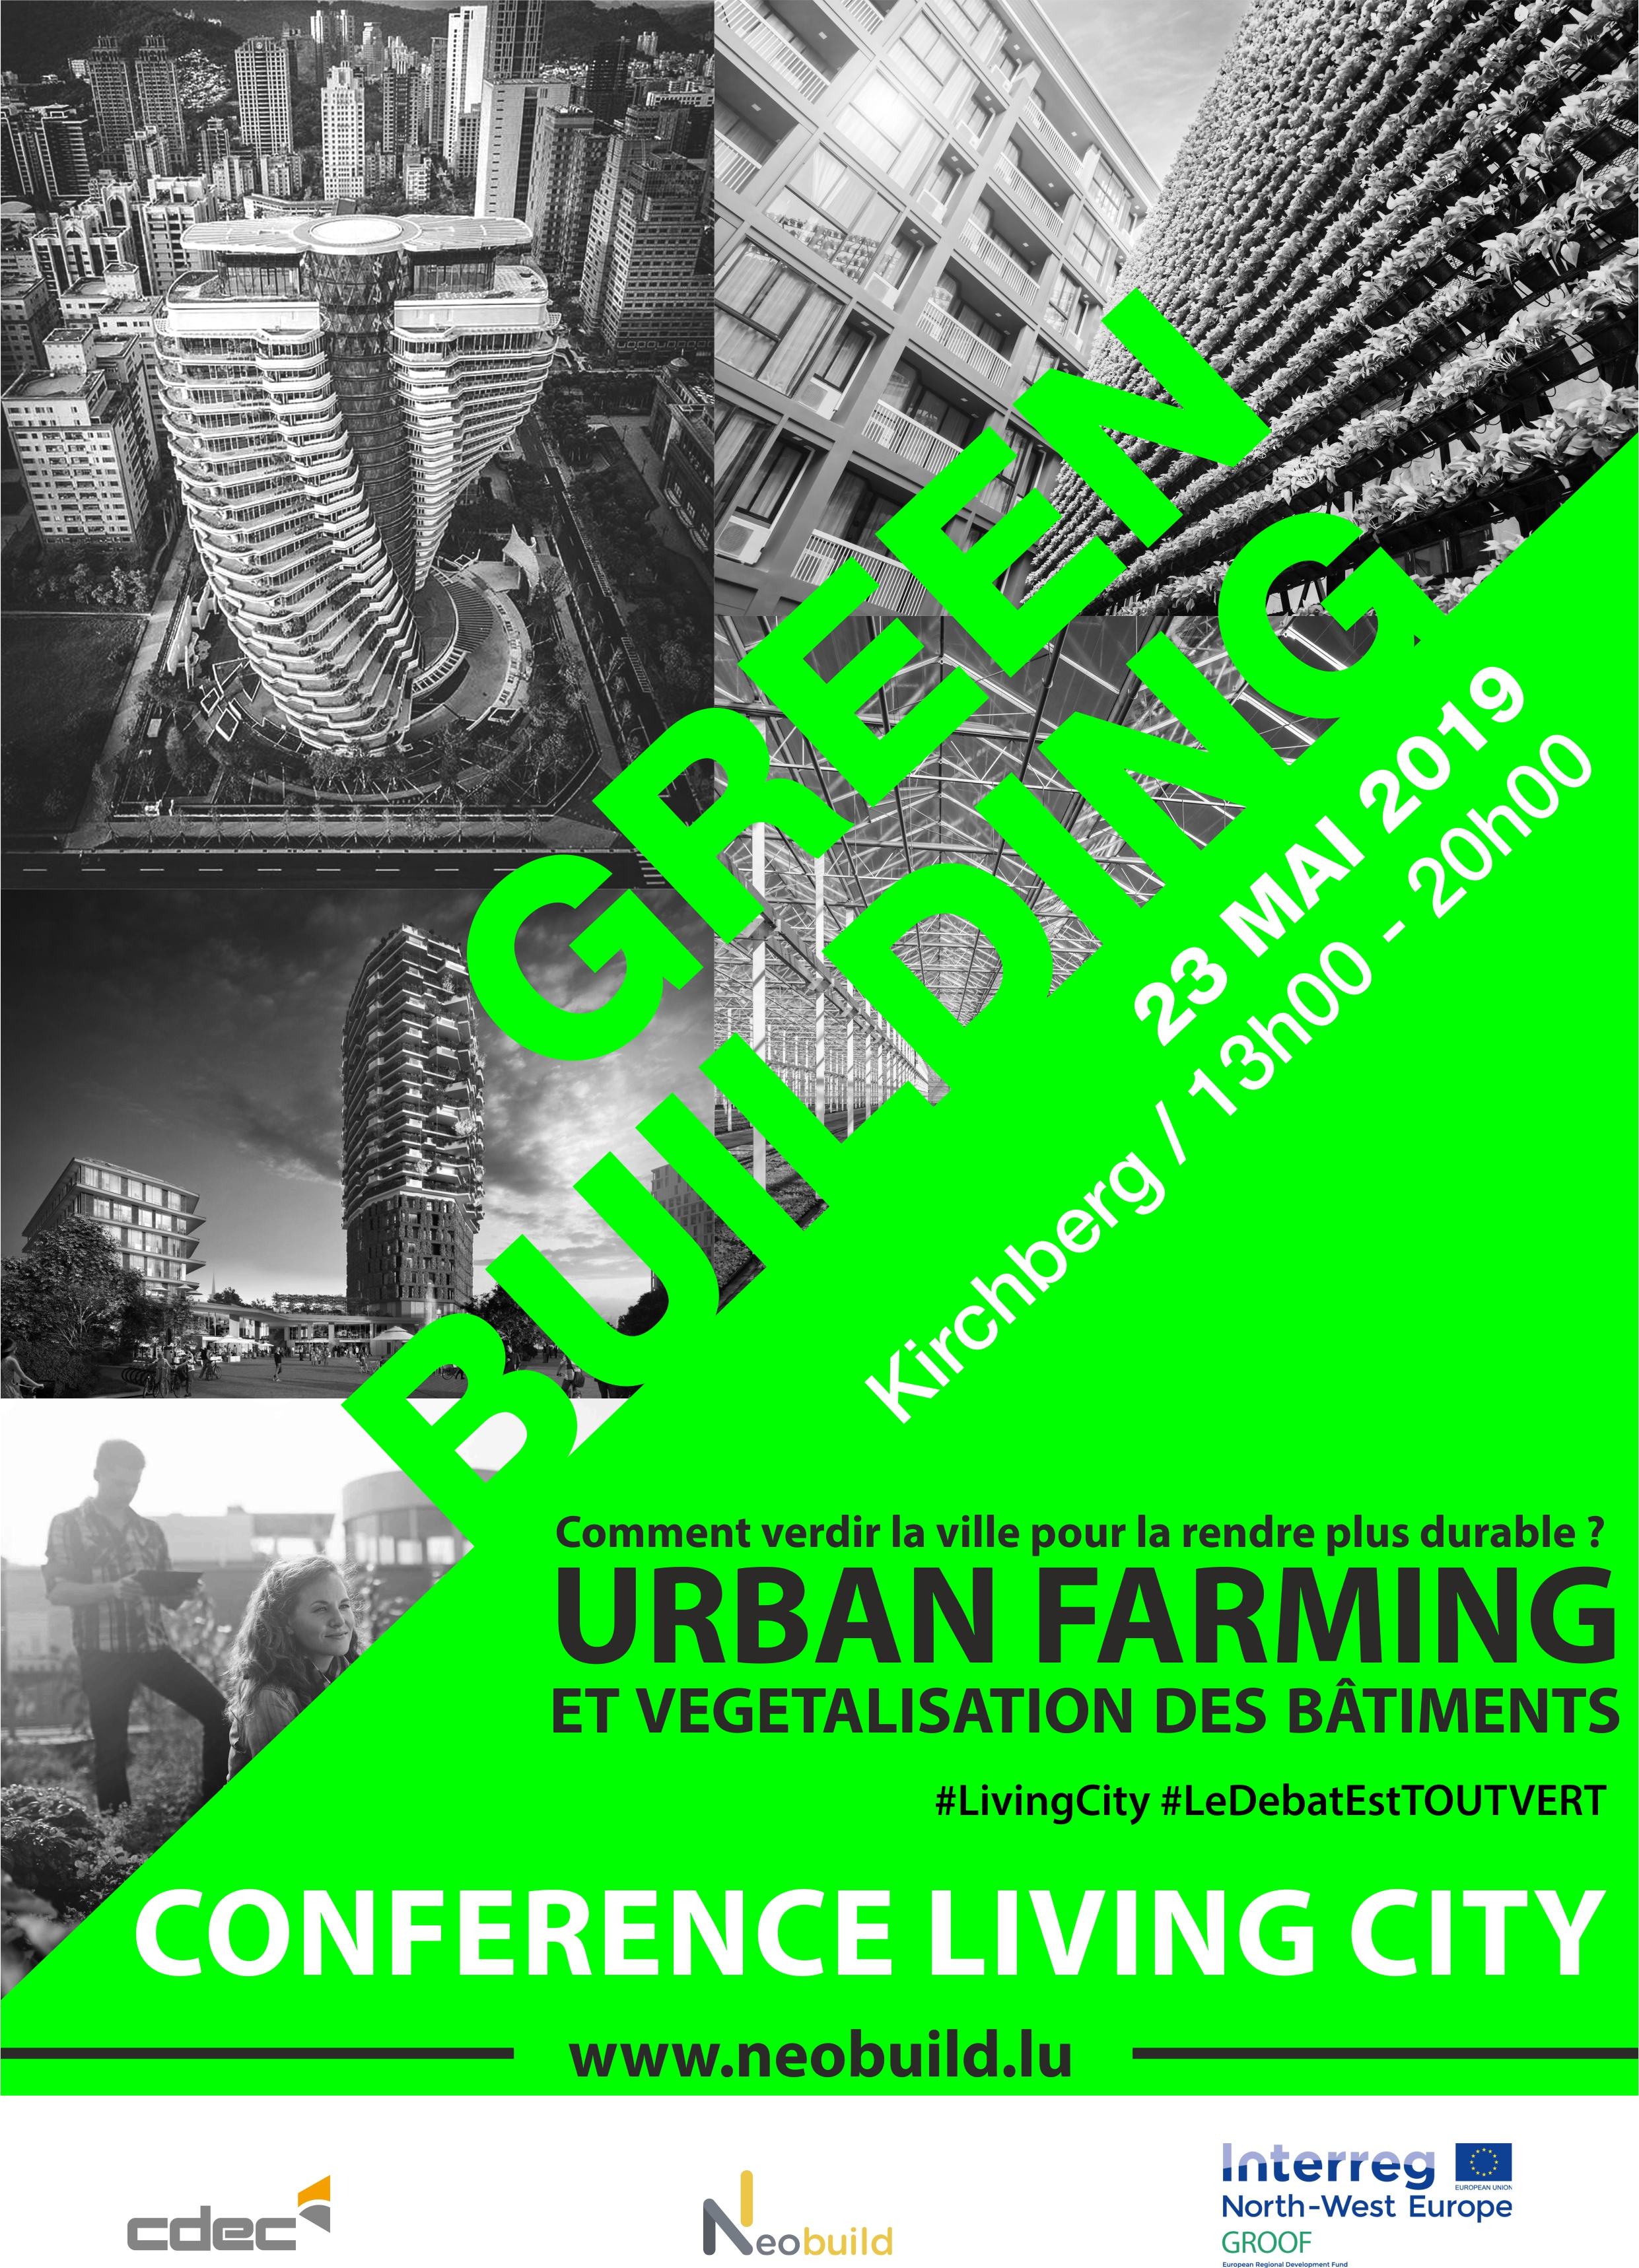 Conférence LIVING CITY : Urban farming & végétalisation des bâtiments